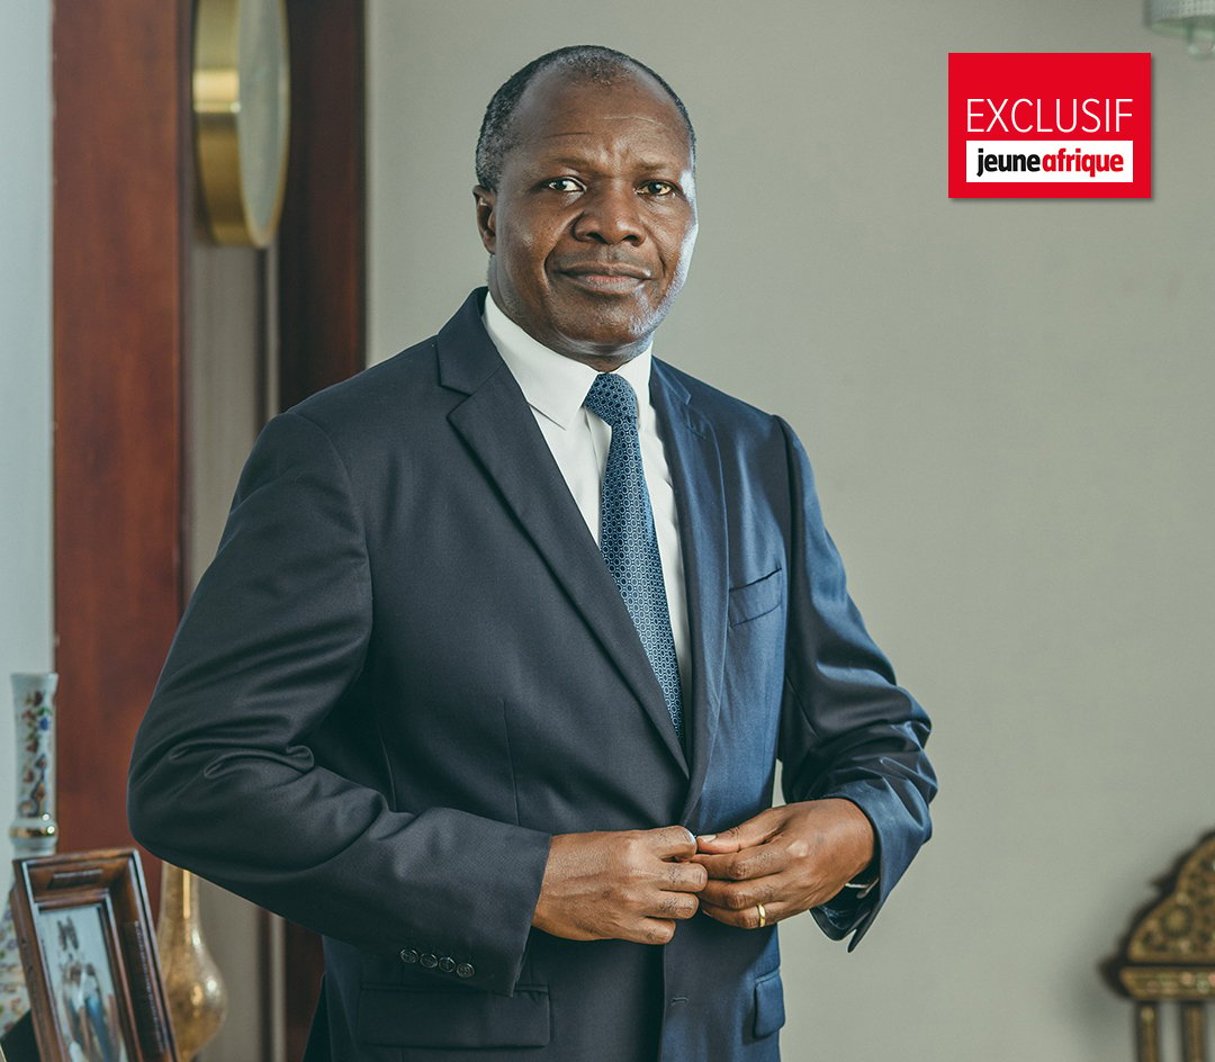 Albert Mabri Toikeusse est candidat à la présidentielle d’octobre en Côte d’Ivoire. © Issam Zejly / Truthbird pour JA